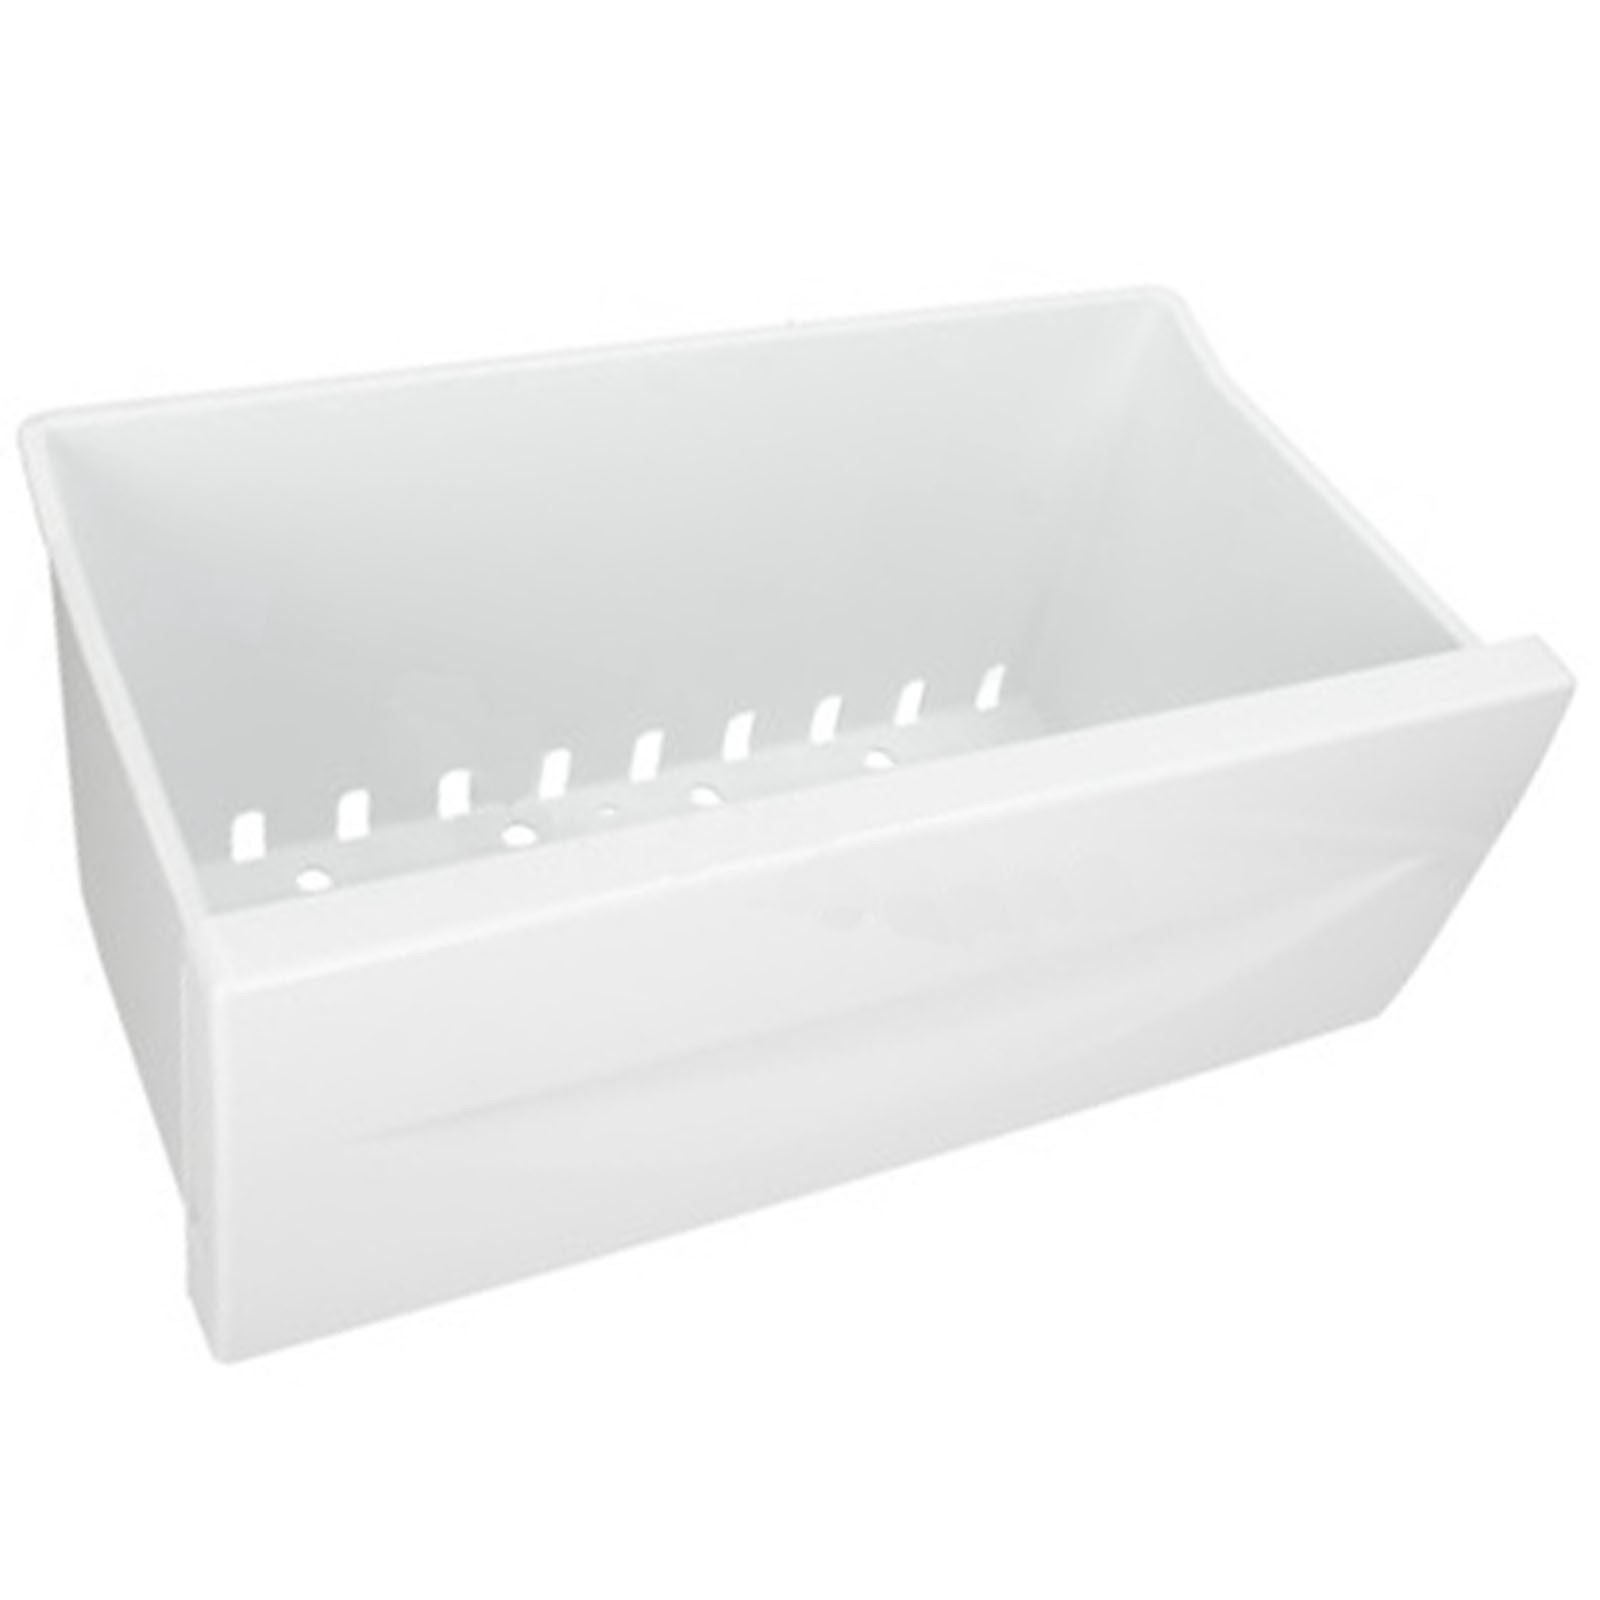 Indesit Fridge Freezer Basket Drawer Bin - C00515831